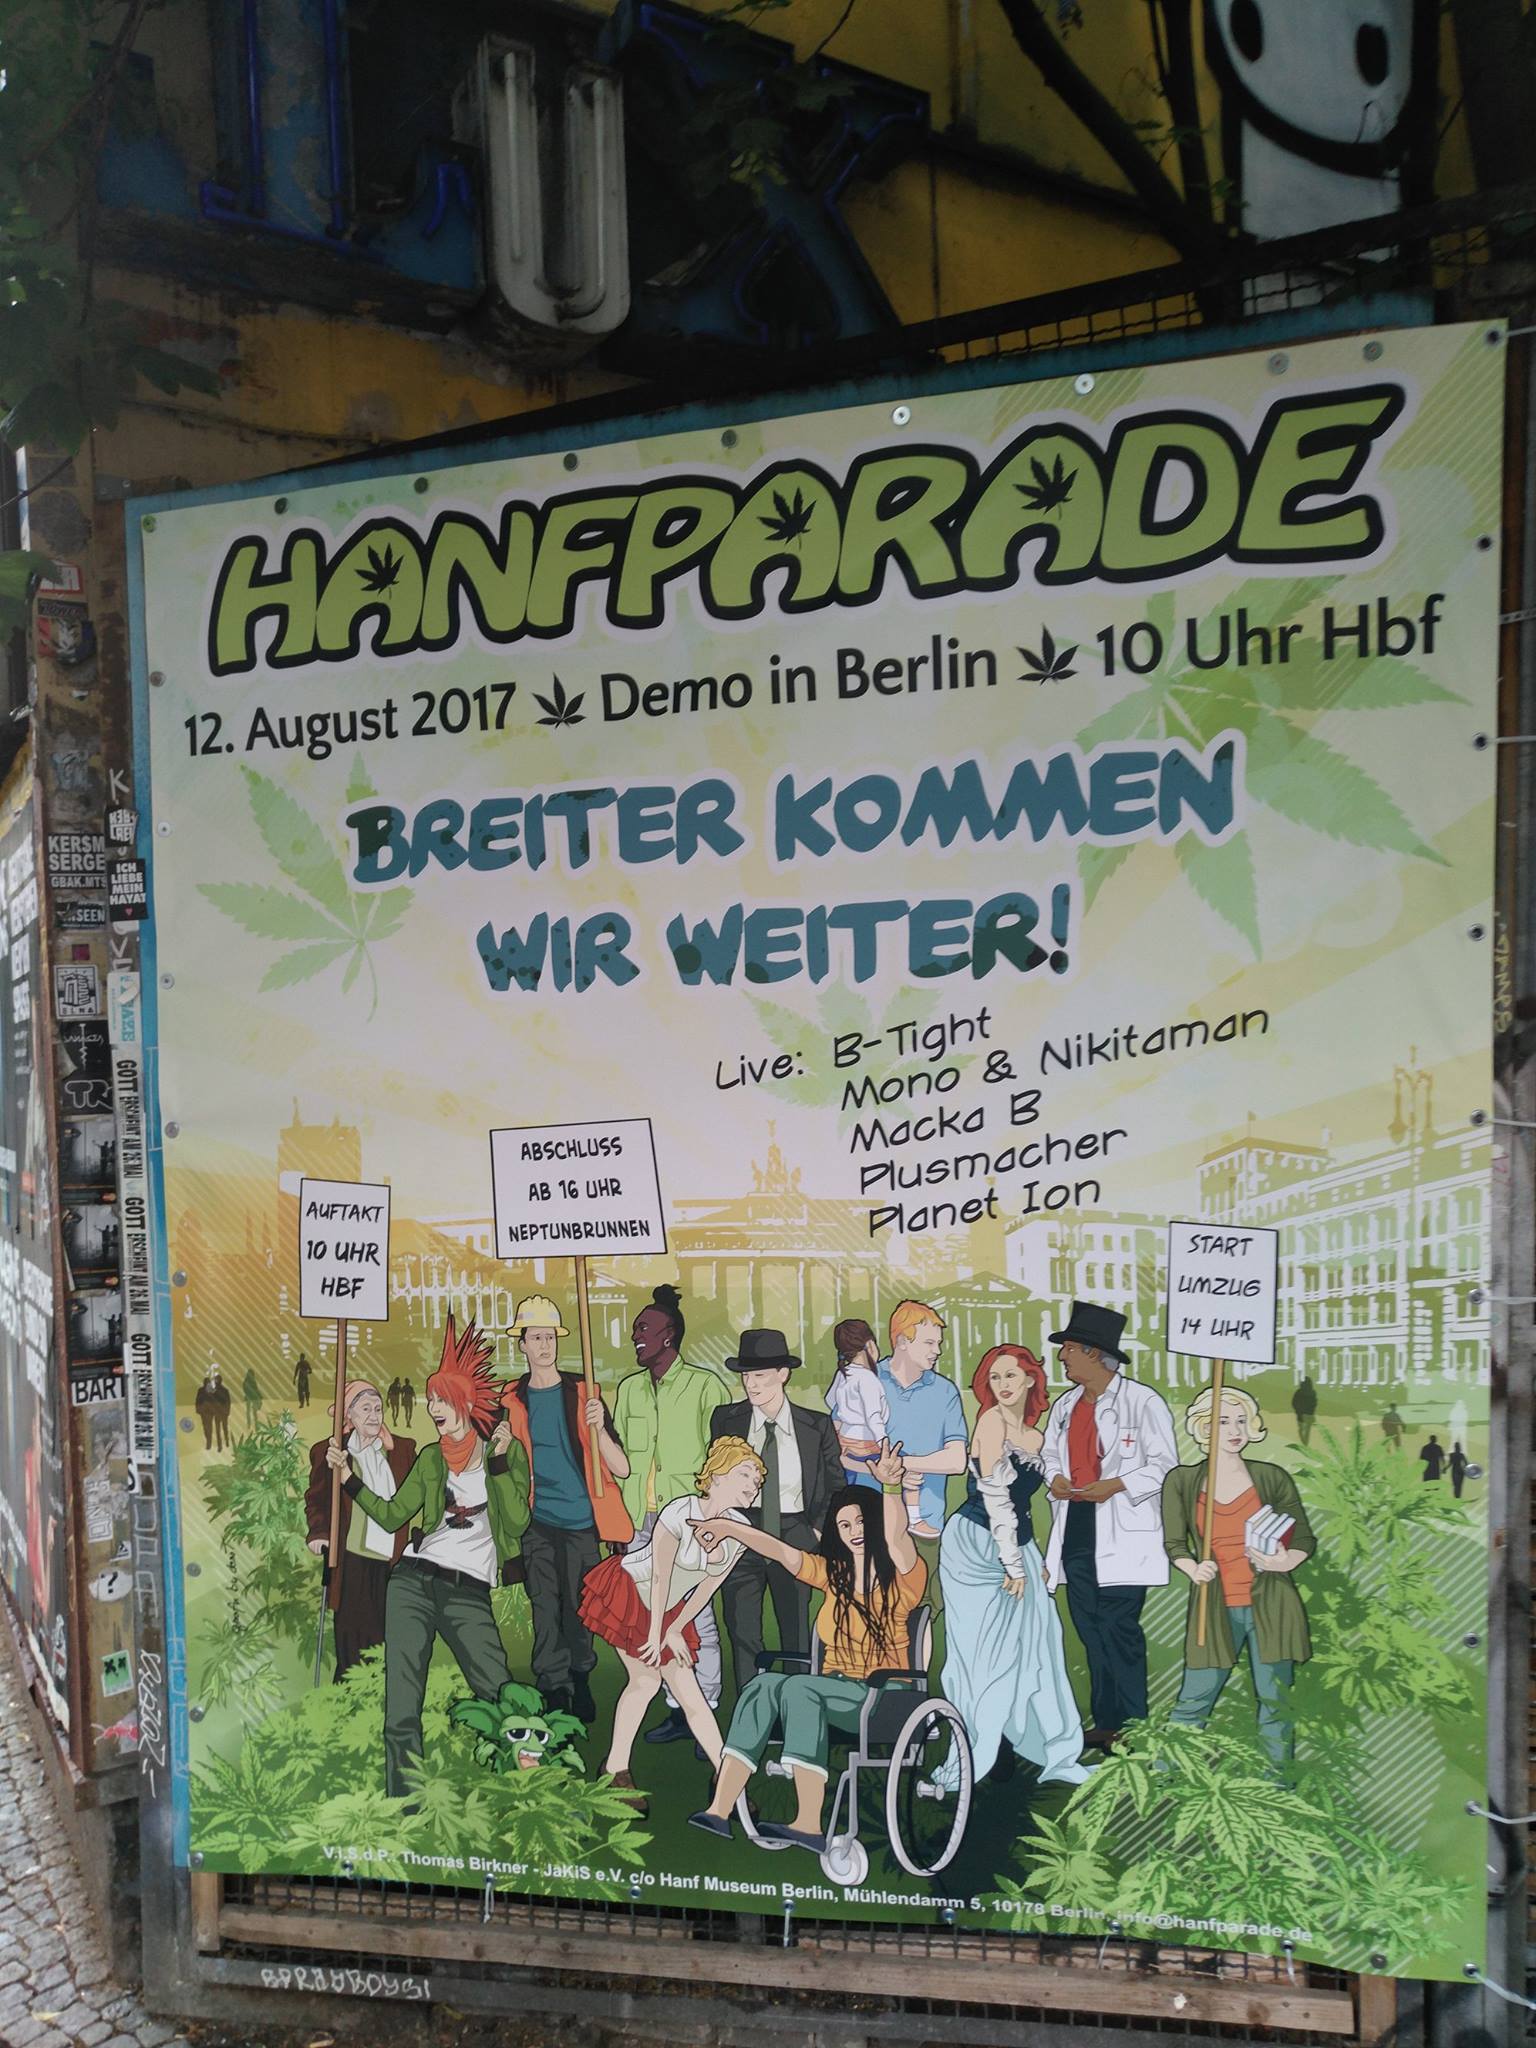 21. Hanfparade für Legalisierung von Cannabis in Deutschland – Cannabis als Medizin im Fokus